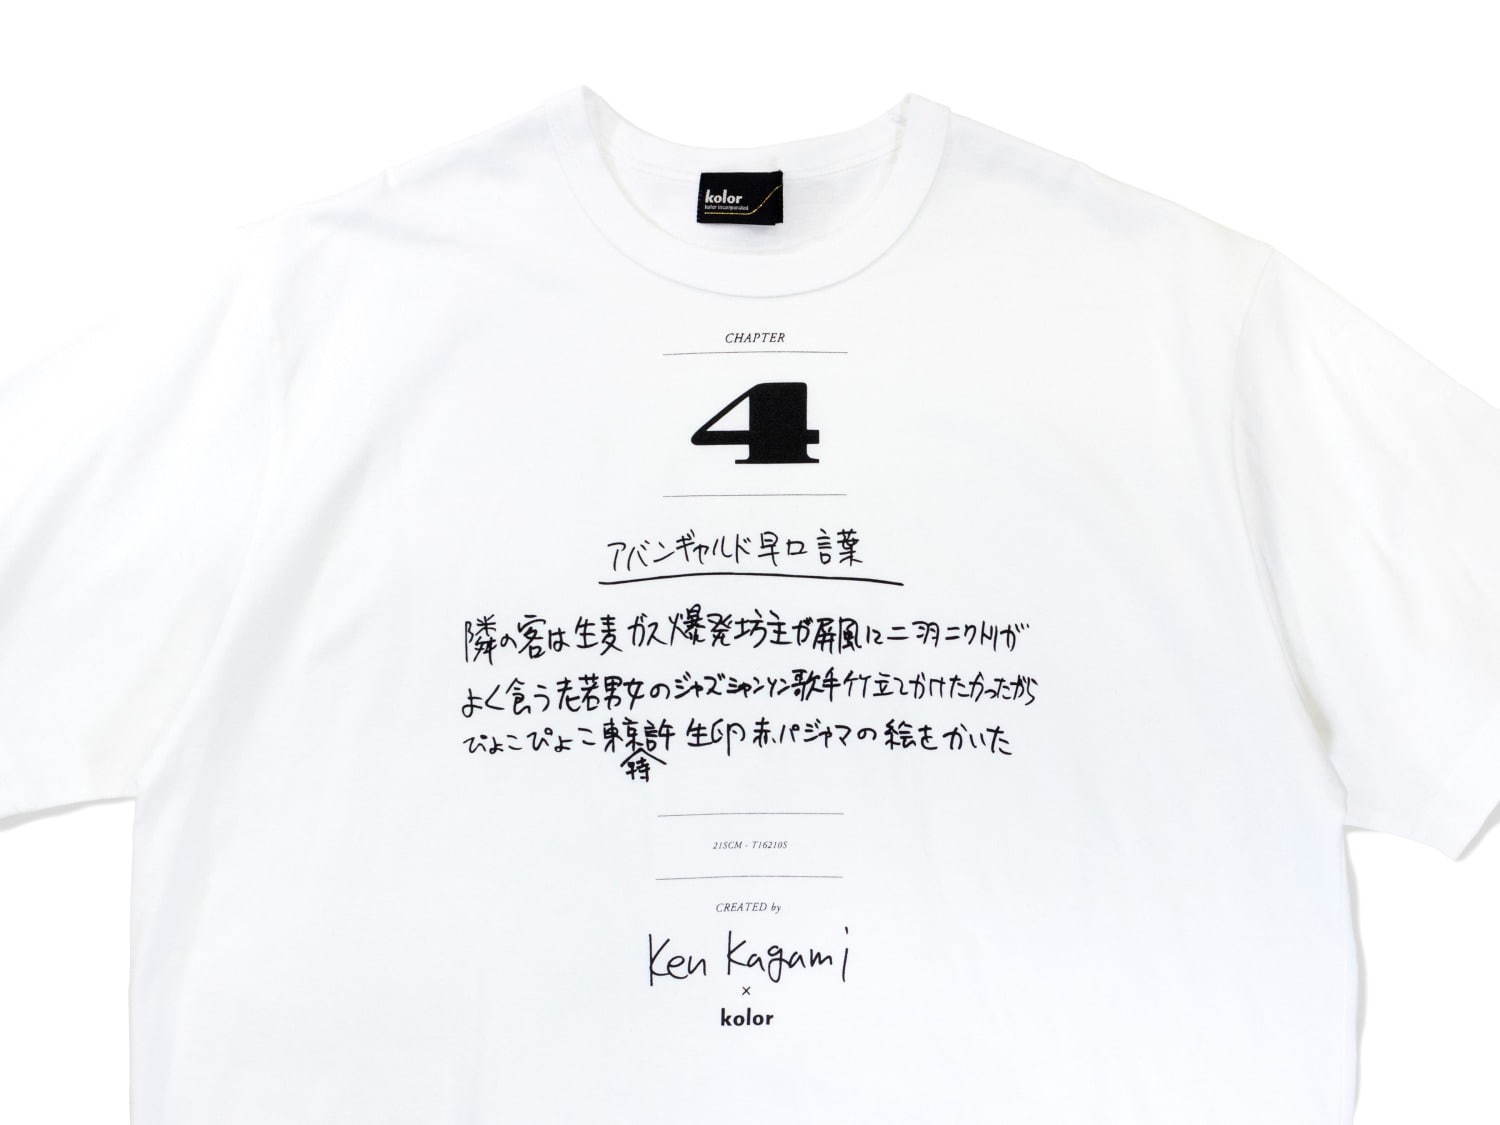 イメージと違う kolor 加賀美健 カラー Tシャツ | hartwellspremium.com